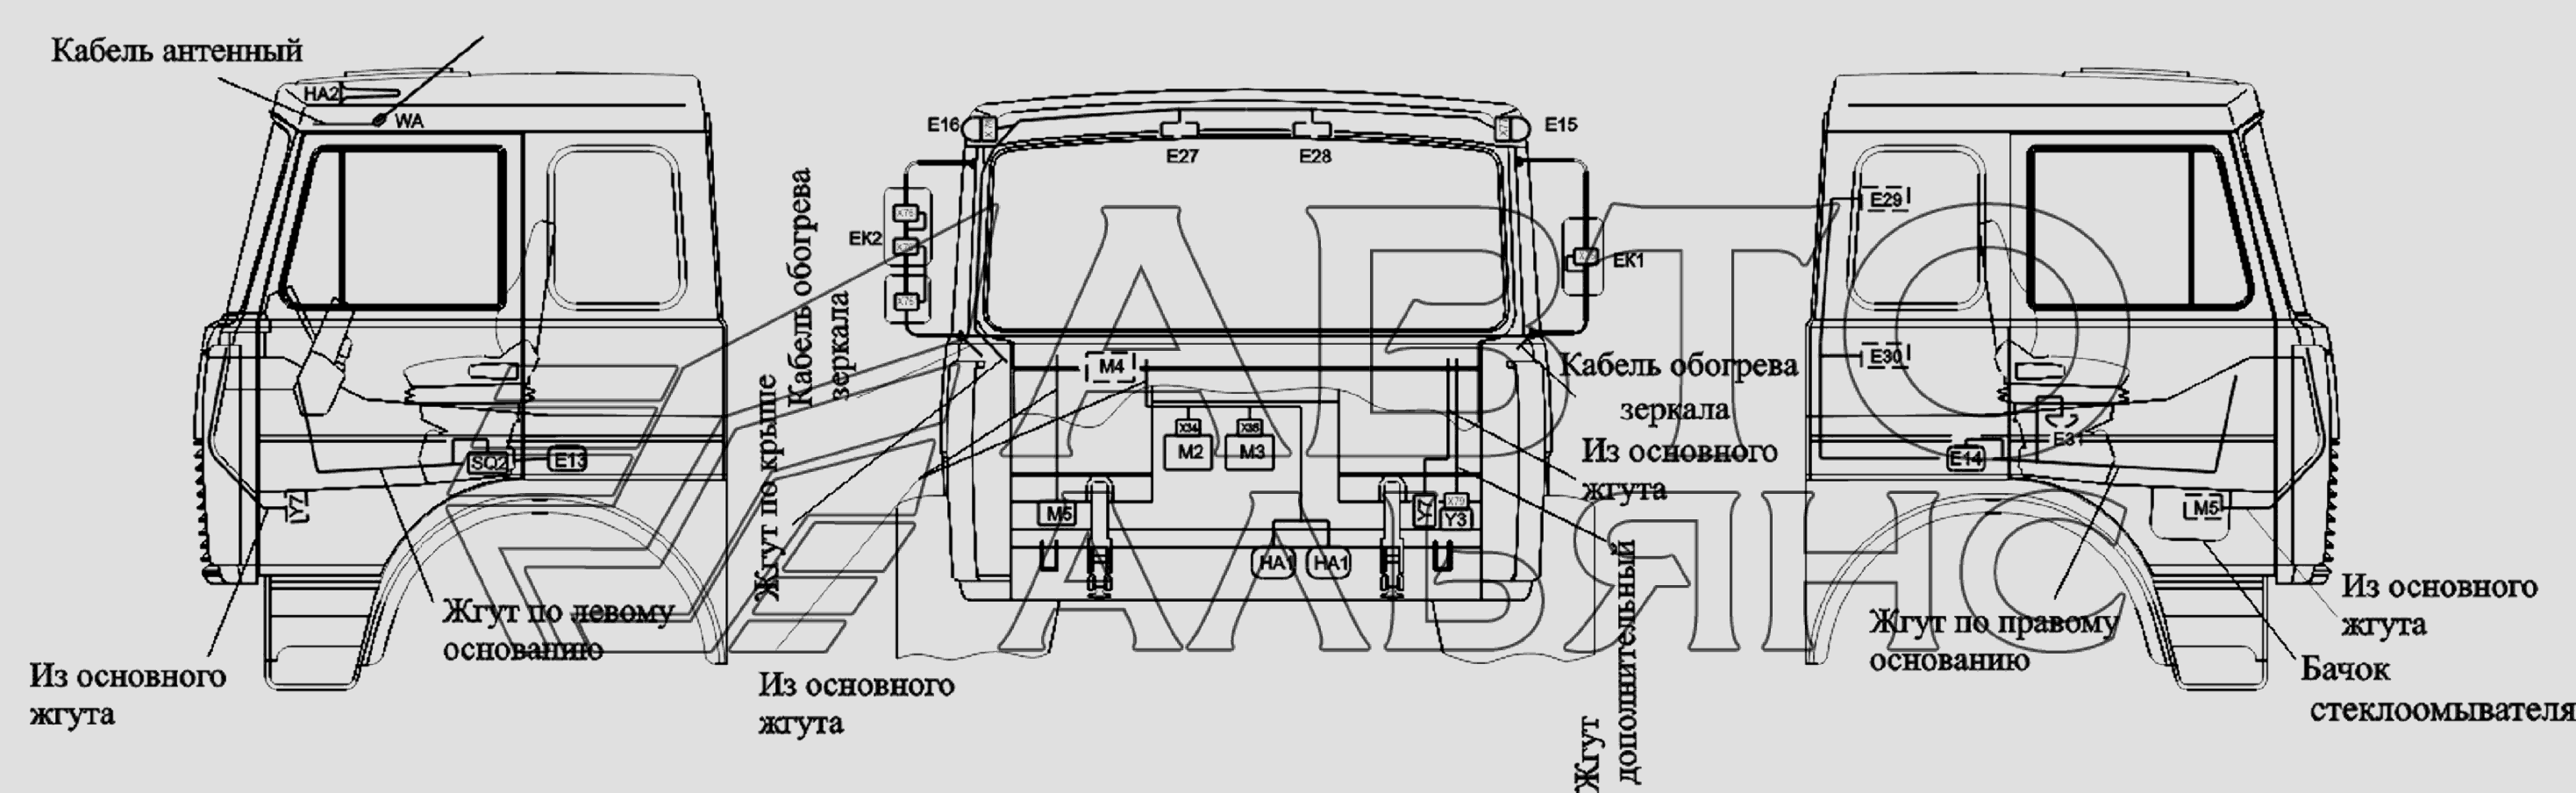 Расположение разъемов и элементов электрооборудования на большой кабине автомобилей-шасси МАЗ-6303A3, 6303A5